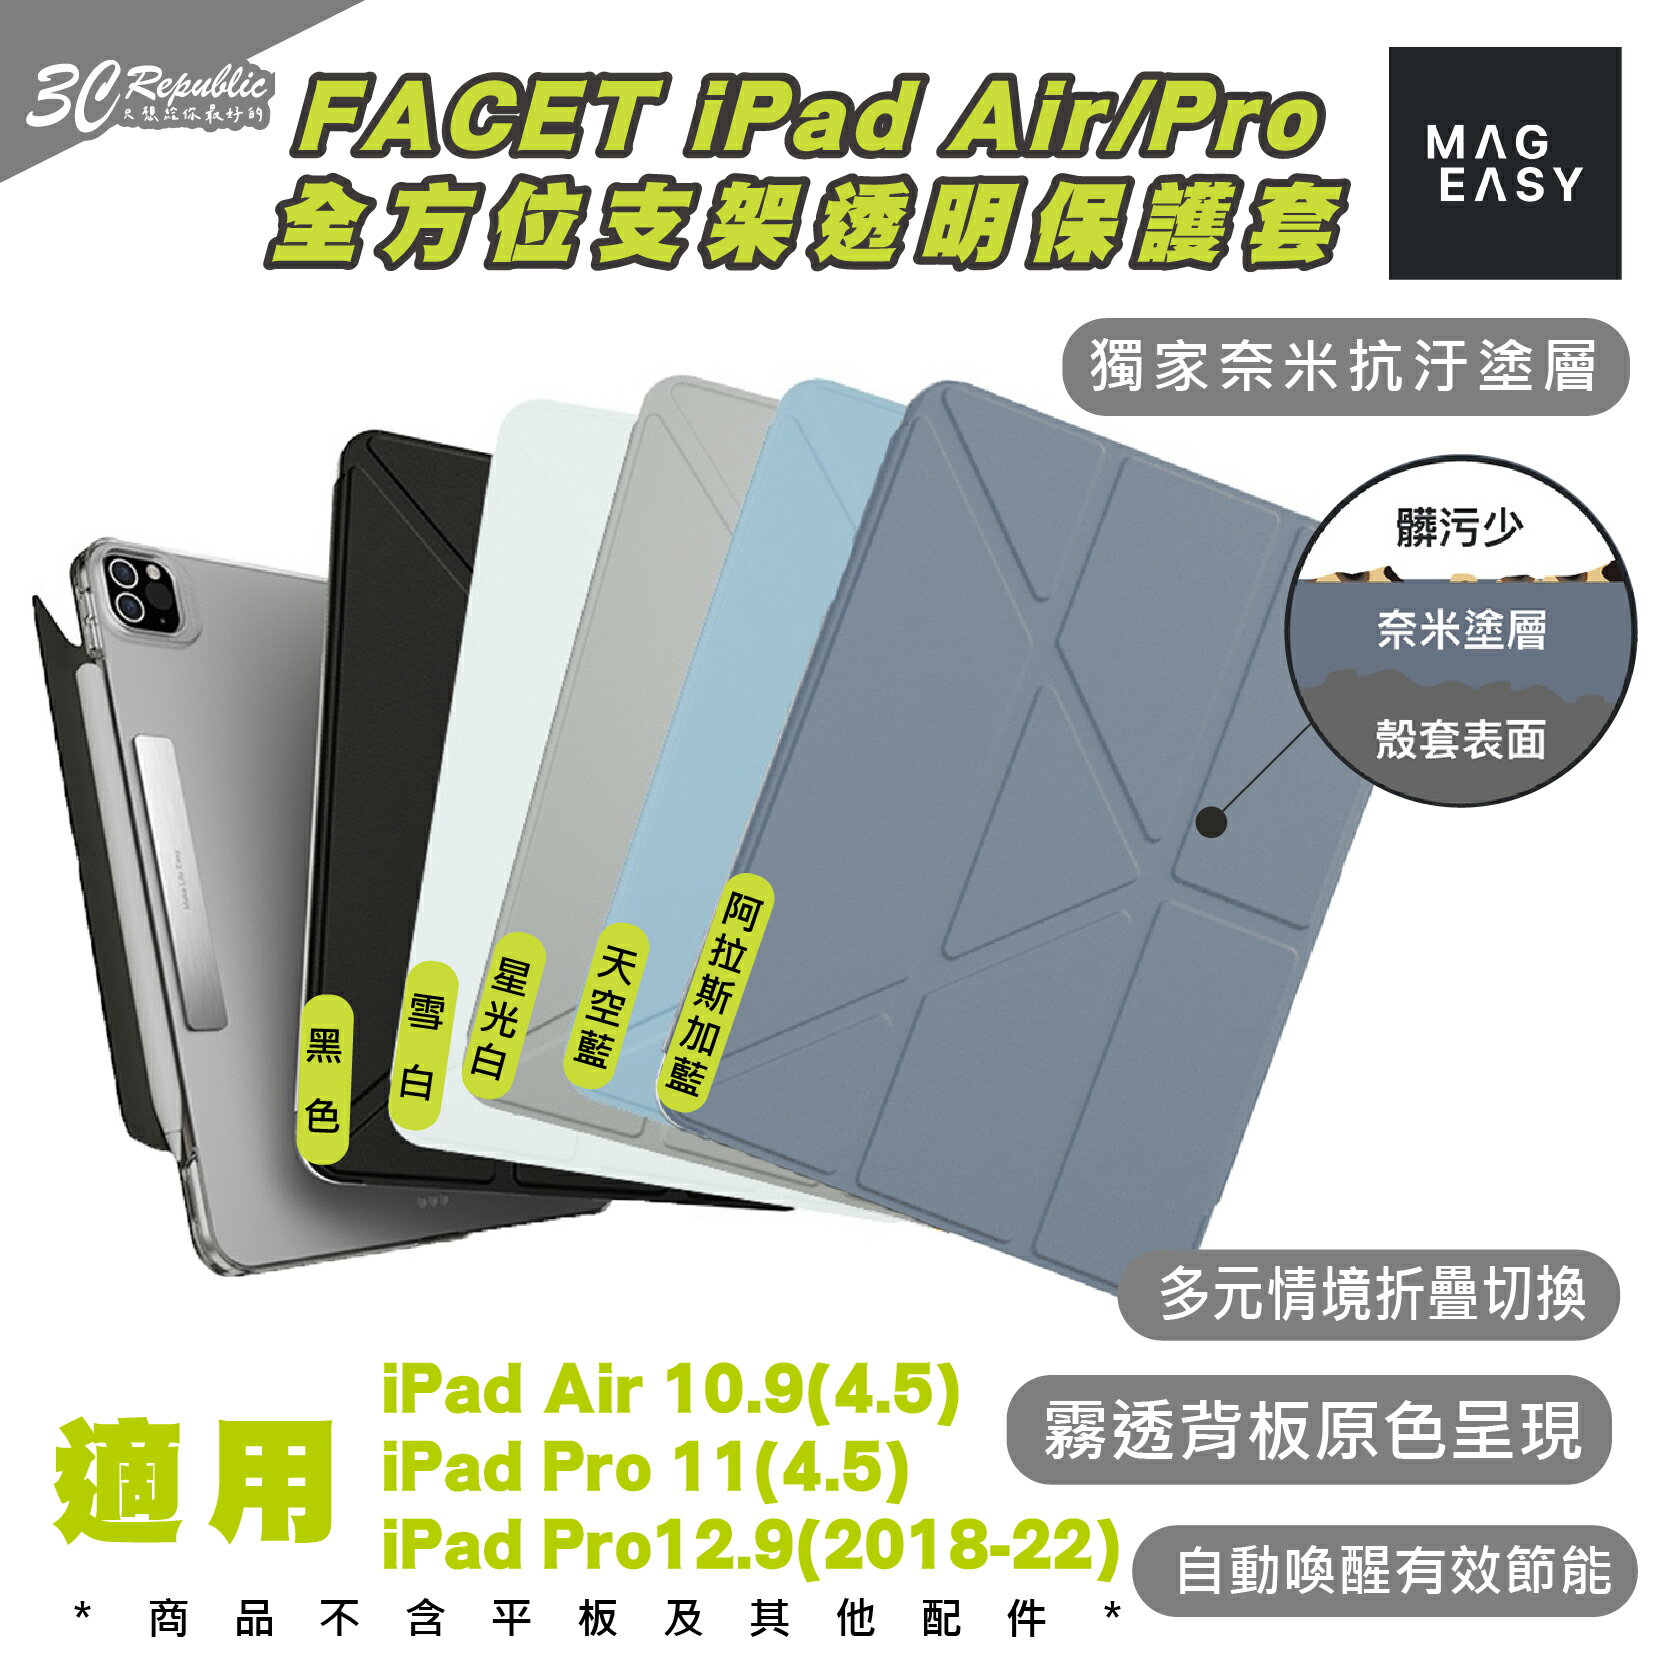 MAGEASY MAGFOLIO 平板 保護套 保護殼 皮套 適用 iPad Air Pro 12 11 10.9 吋【APP下單8%點數回饋】